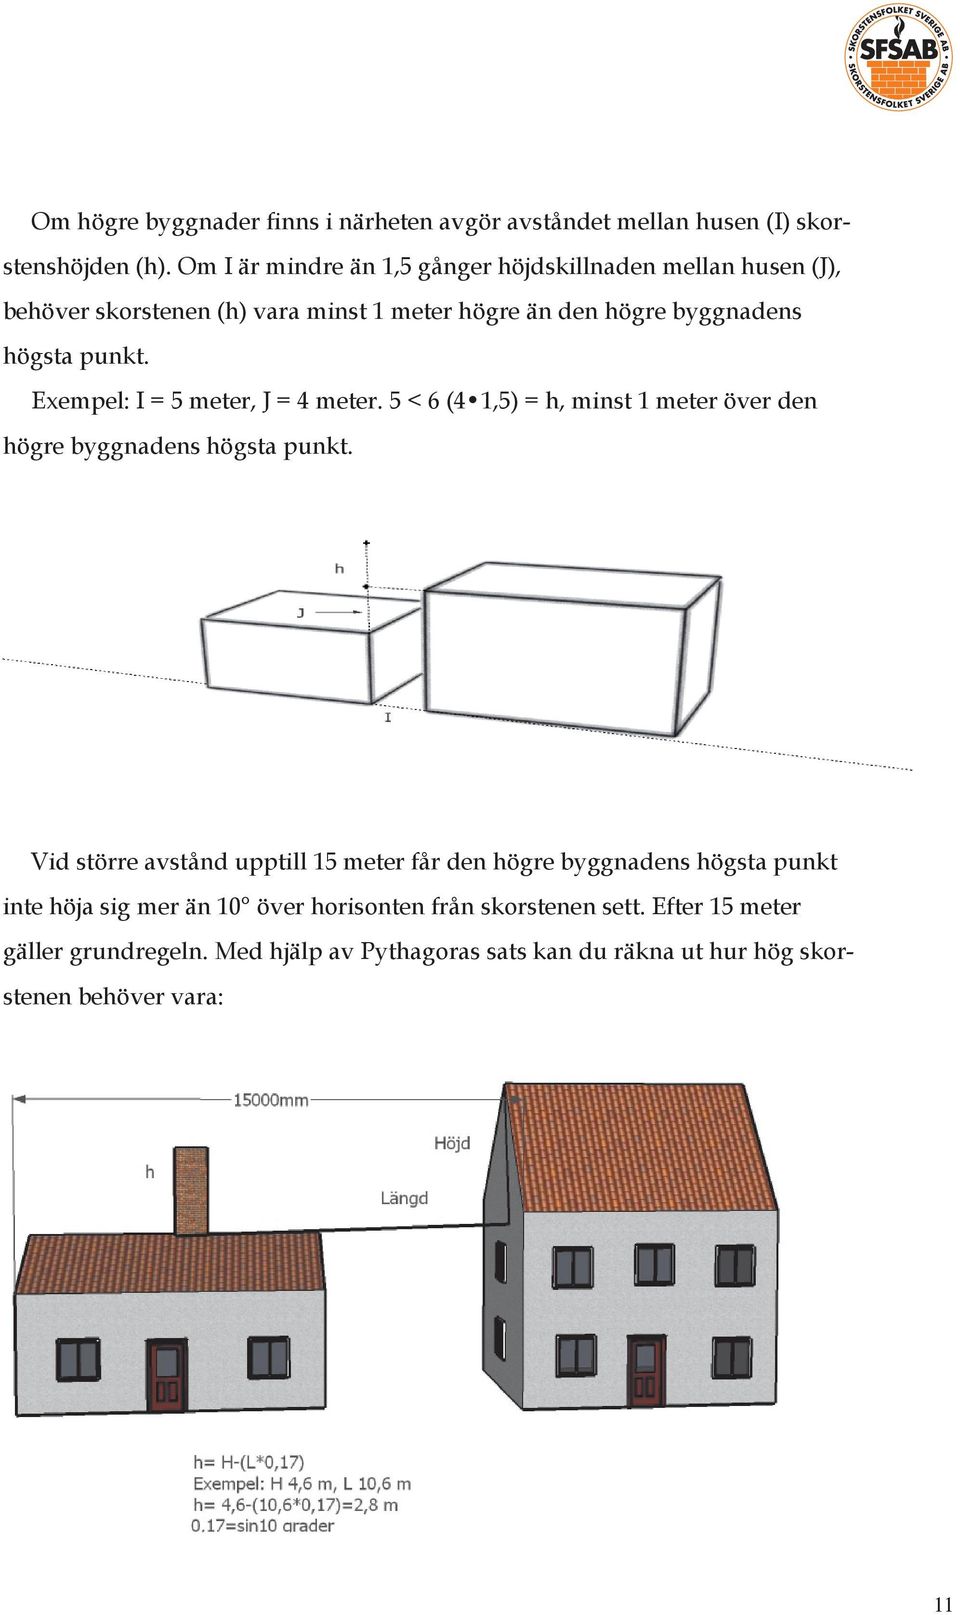 Exempel: I = 5 meter, J = 4 meter. 5 < 6 (4 1,5) = h, minst 1 meter över den högre byggnadens högsta punkt.